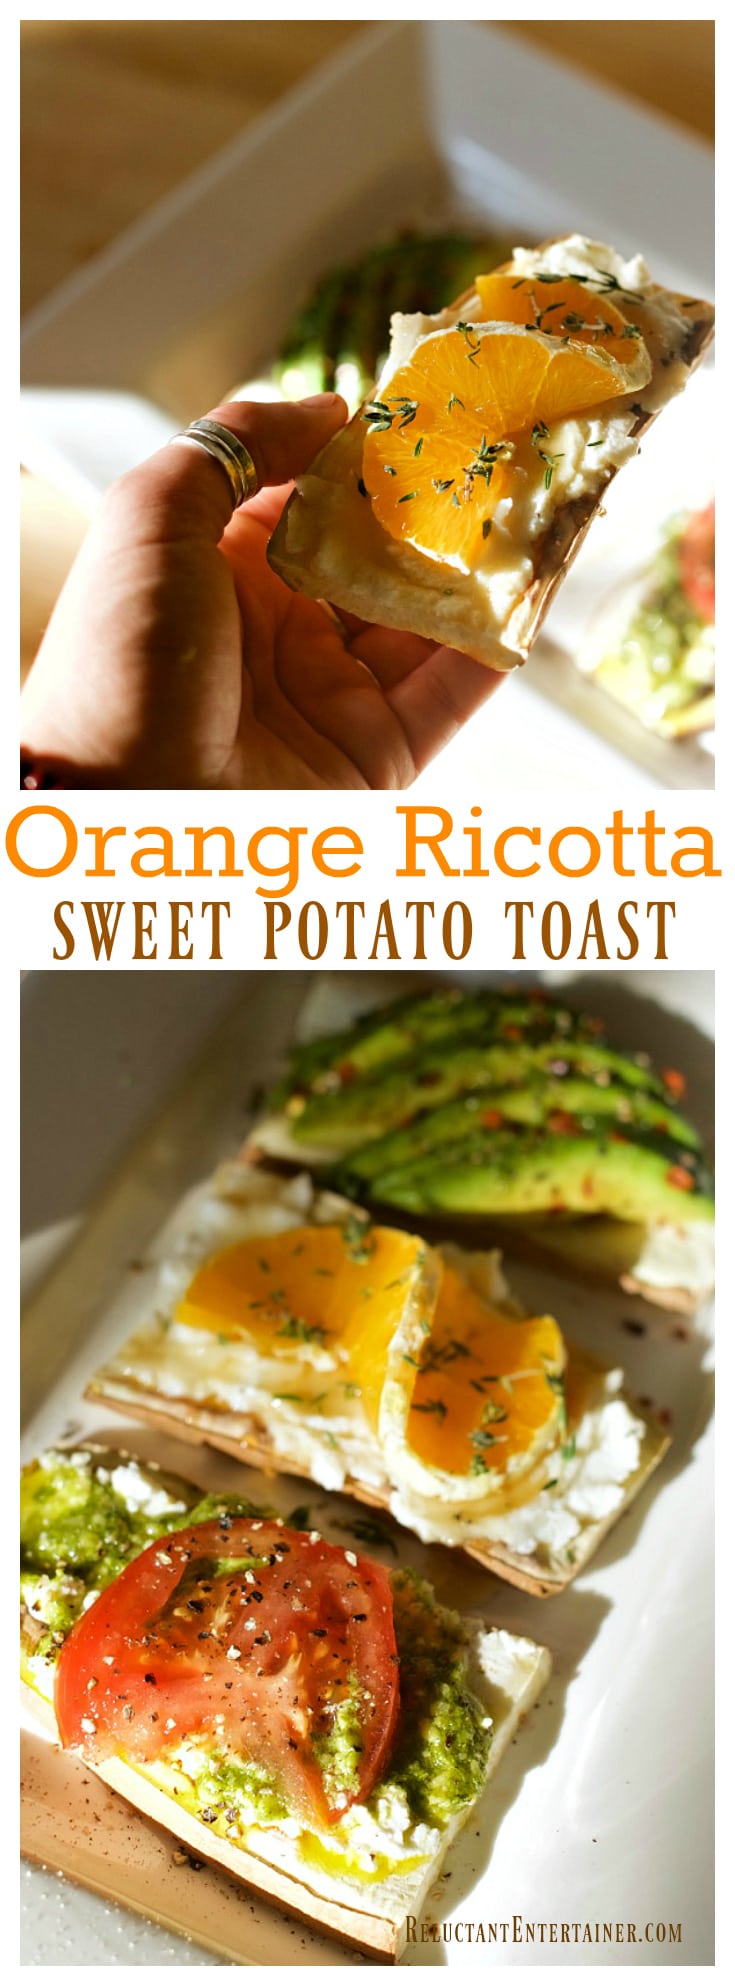 Orange Ricotta Sweet Potato Toast